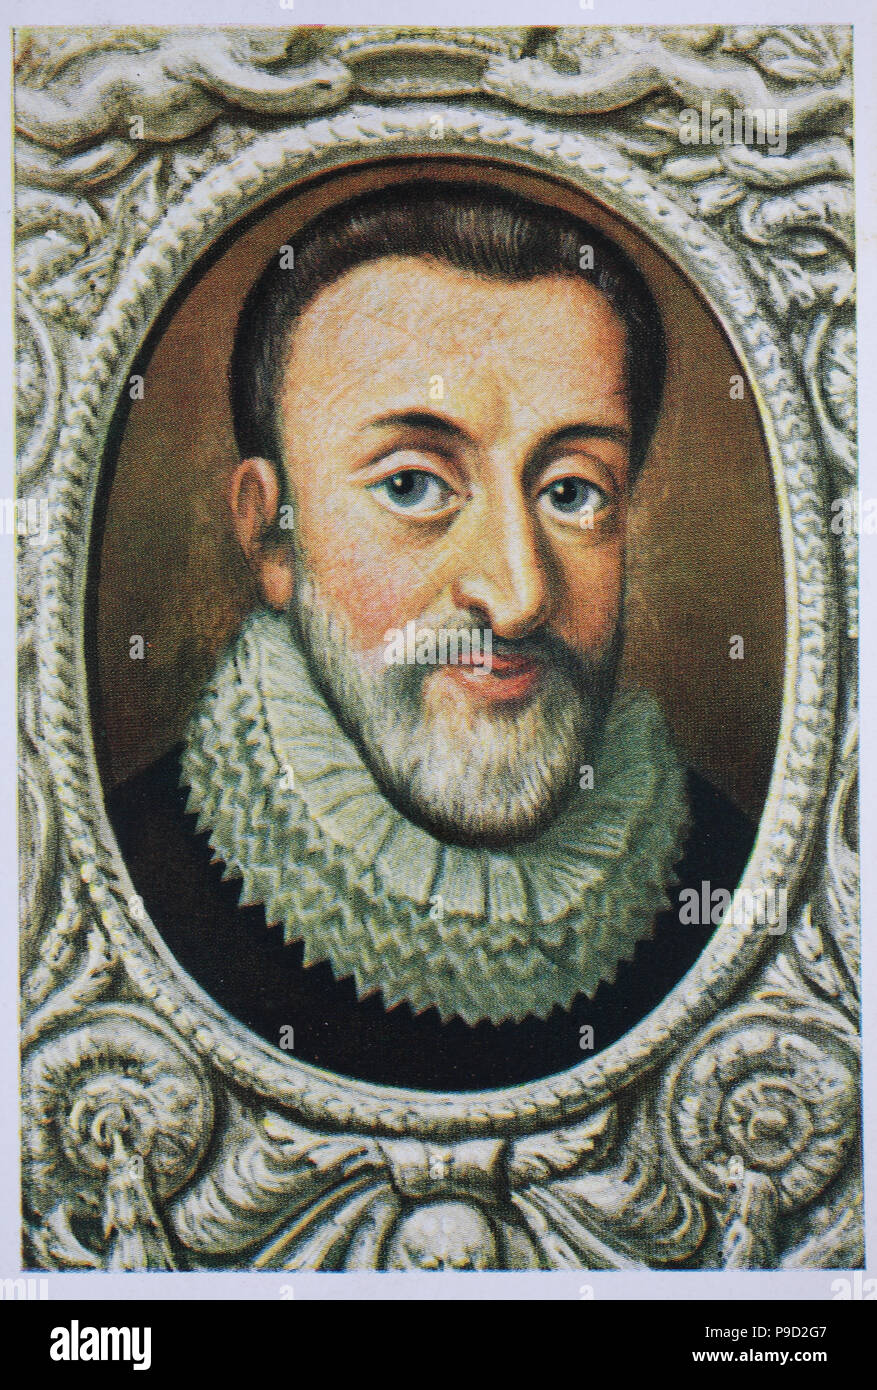 Heinrich IV., Heinrich IV., als Henri-Quatre; 13. Dezember 1553 â € "14. Mai 1610, auch bekannt unter dem Beinamen Guter Heinrich, war König von Navarra von 1572 bis 1610 und der König von Frankreich von 1589 bis 1610, digital verbesserte Reproduktion einer Vorlage drucken aus dem Jahr 1900 Stockfoto